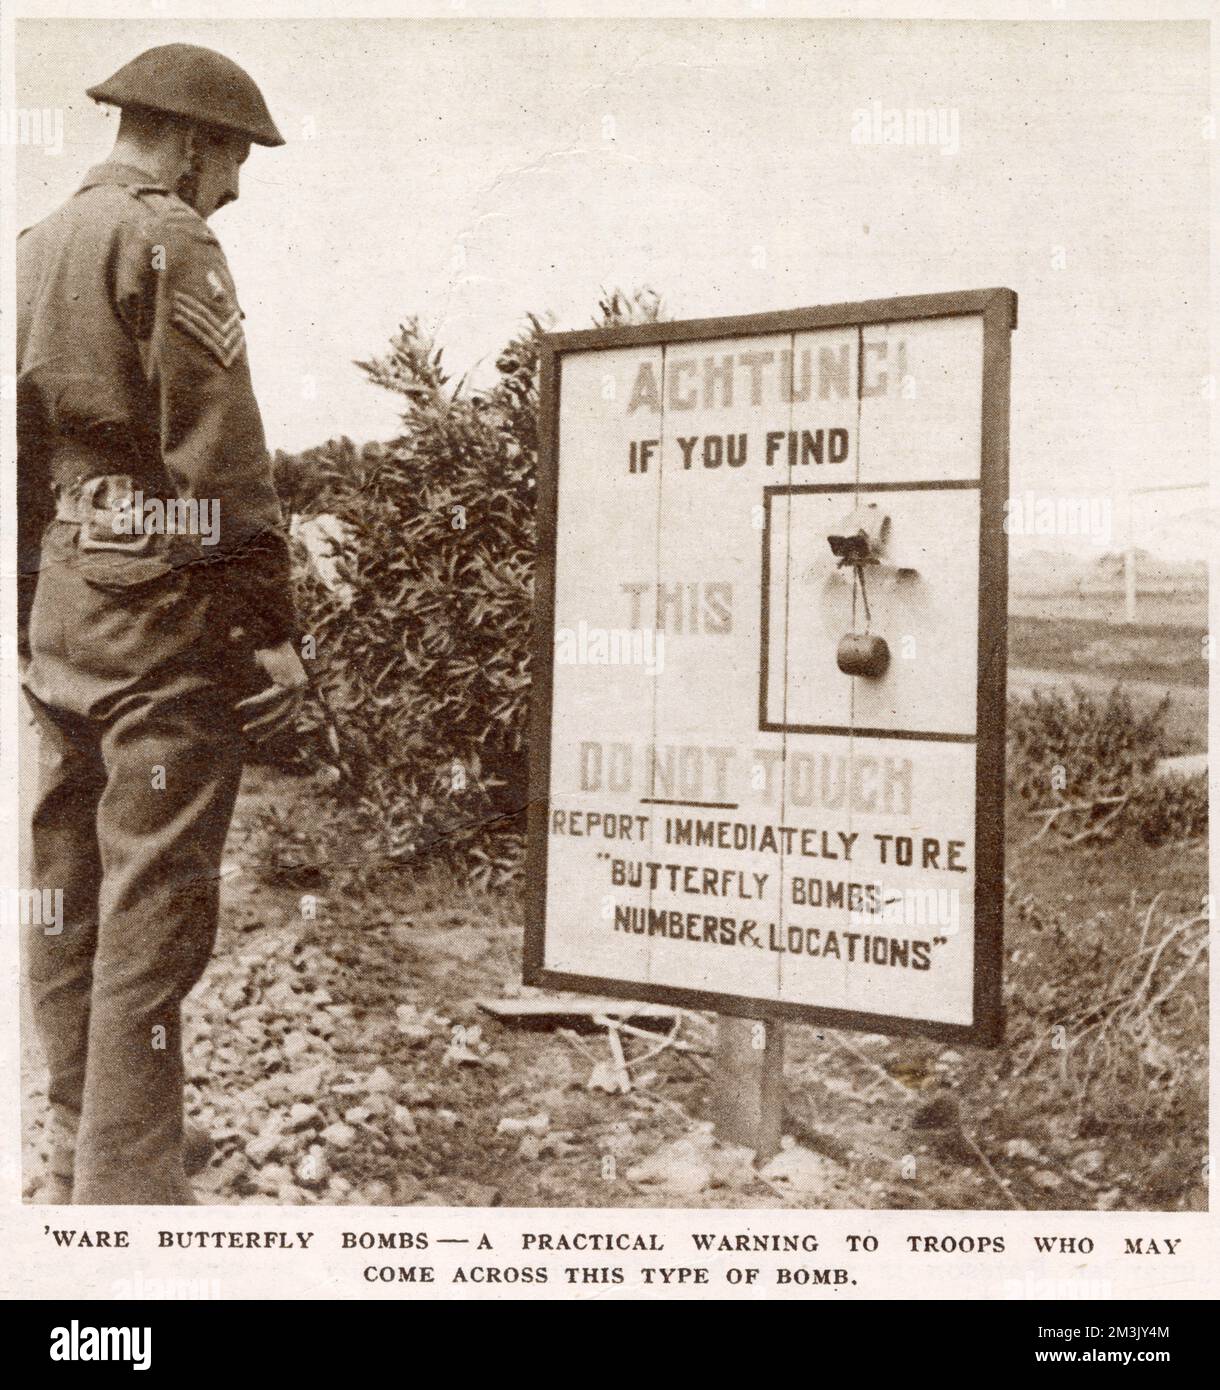 Ein britischer feldwebel, der auf eine Warnmeldung zu den Antipersonenminen "Schmetterling" in Italien während des Zweiten Weltkriegs schaut. Die Warnung weist jeden, der eine dieser Bomben findet, an, sie nicht zu berühren und sie den königlichen Ingenieuren zu melden. Stockfoto